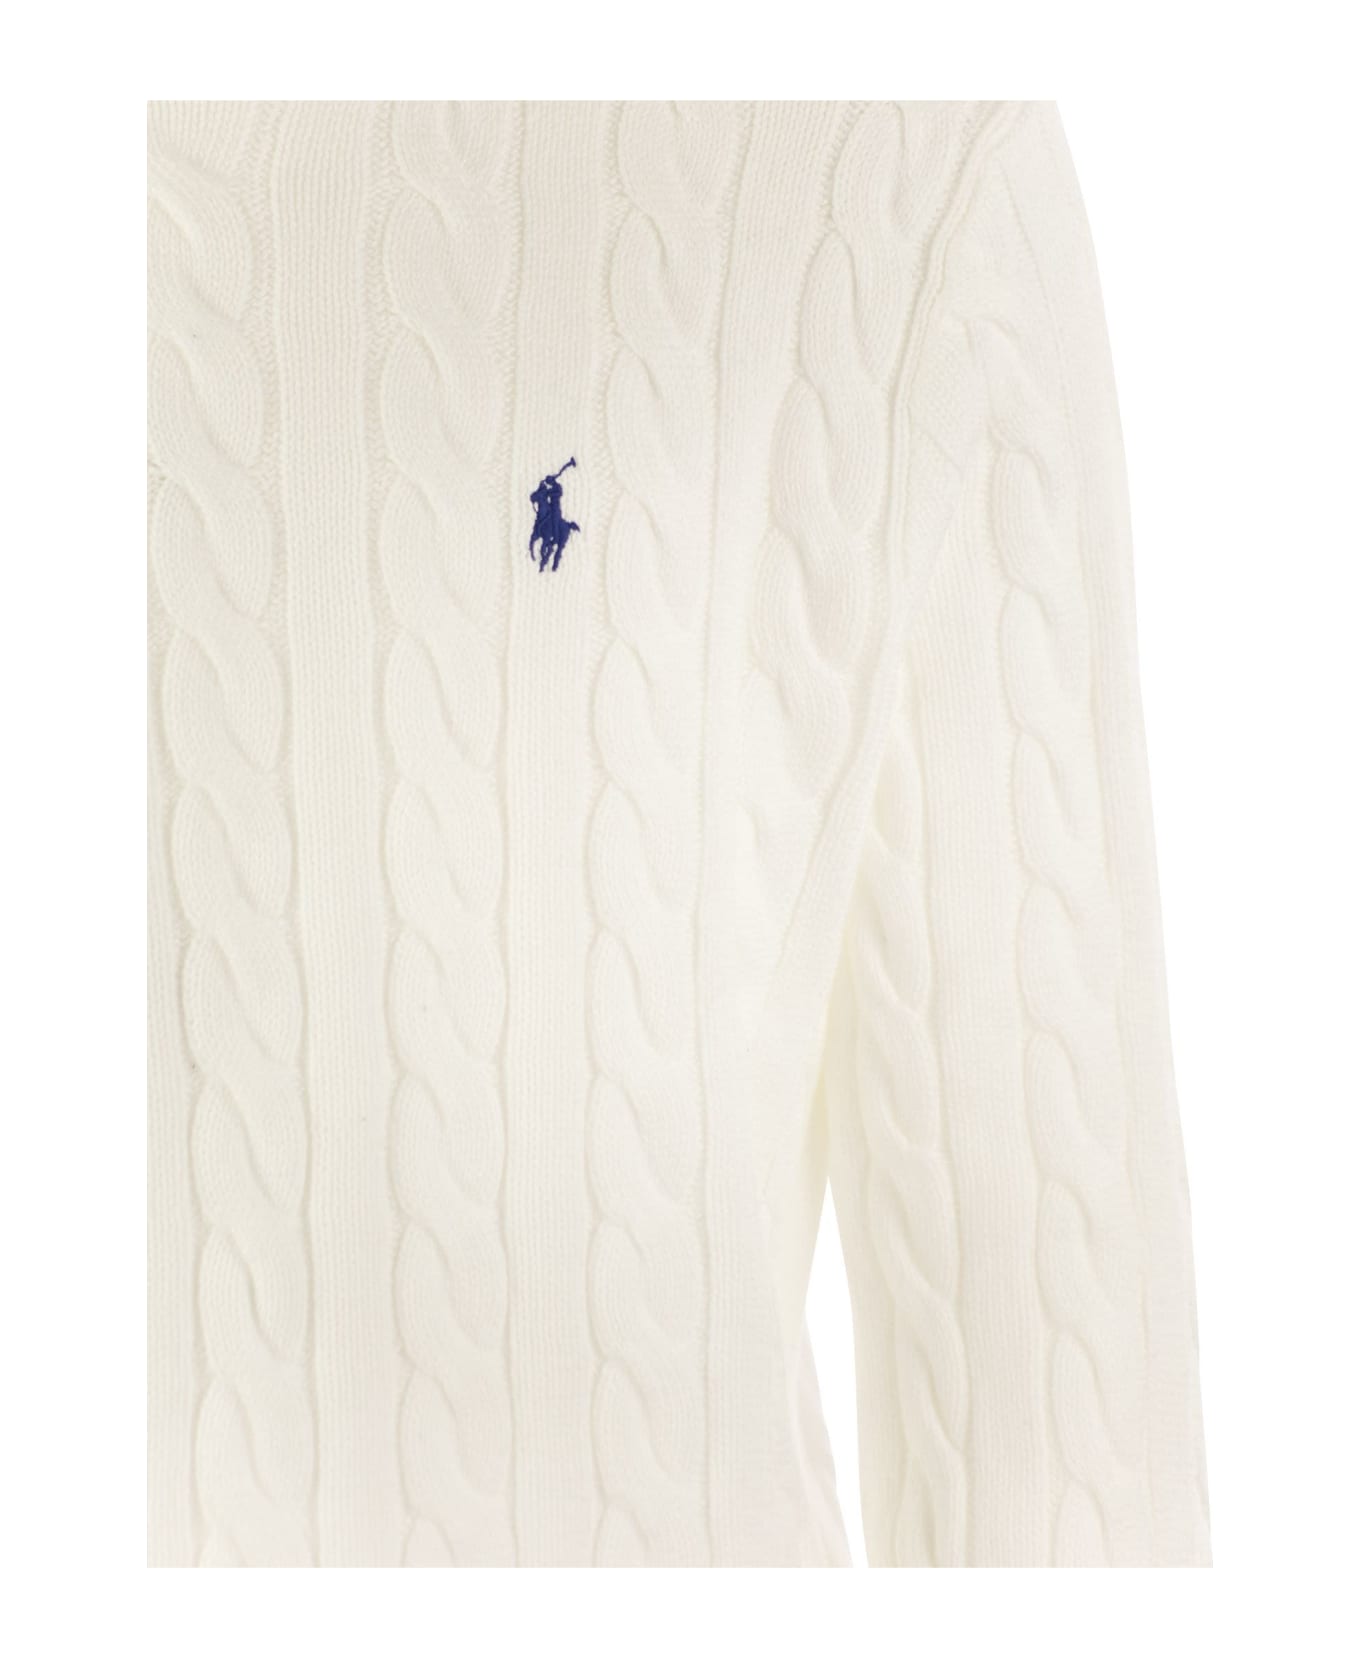 Polo Ralph Lauren White Cotton Knitwear - White